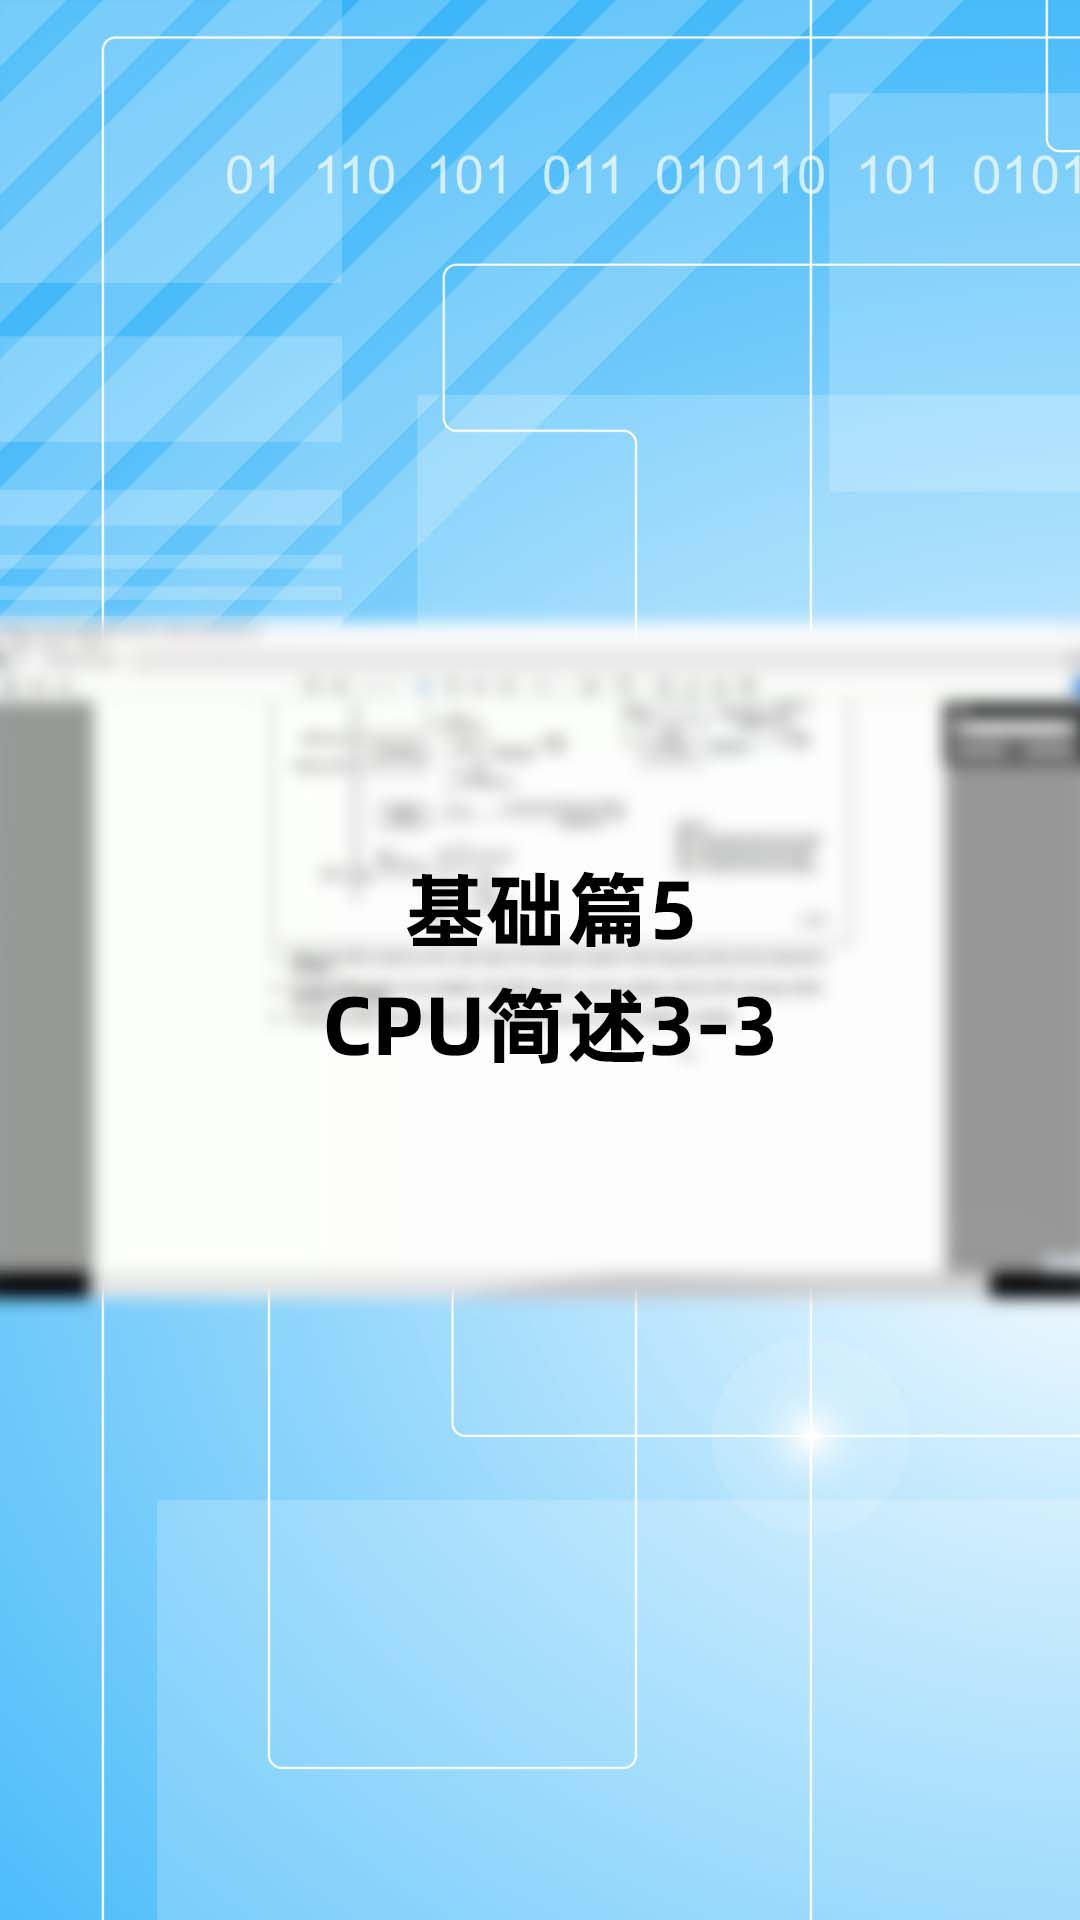 基础篇5 - 1.5_CPU简述3